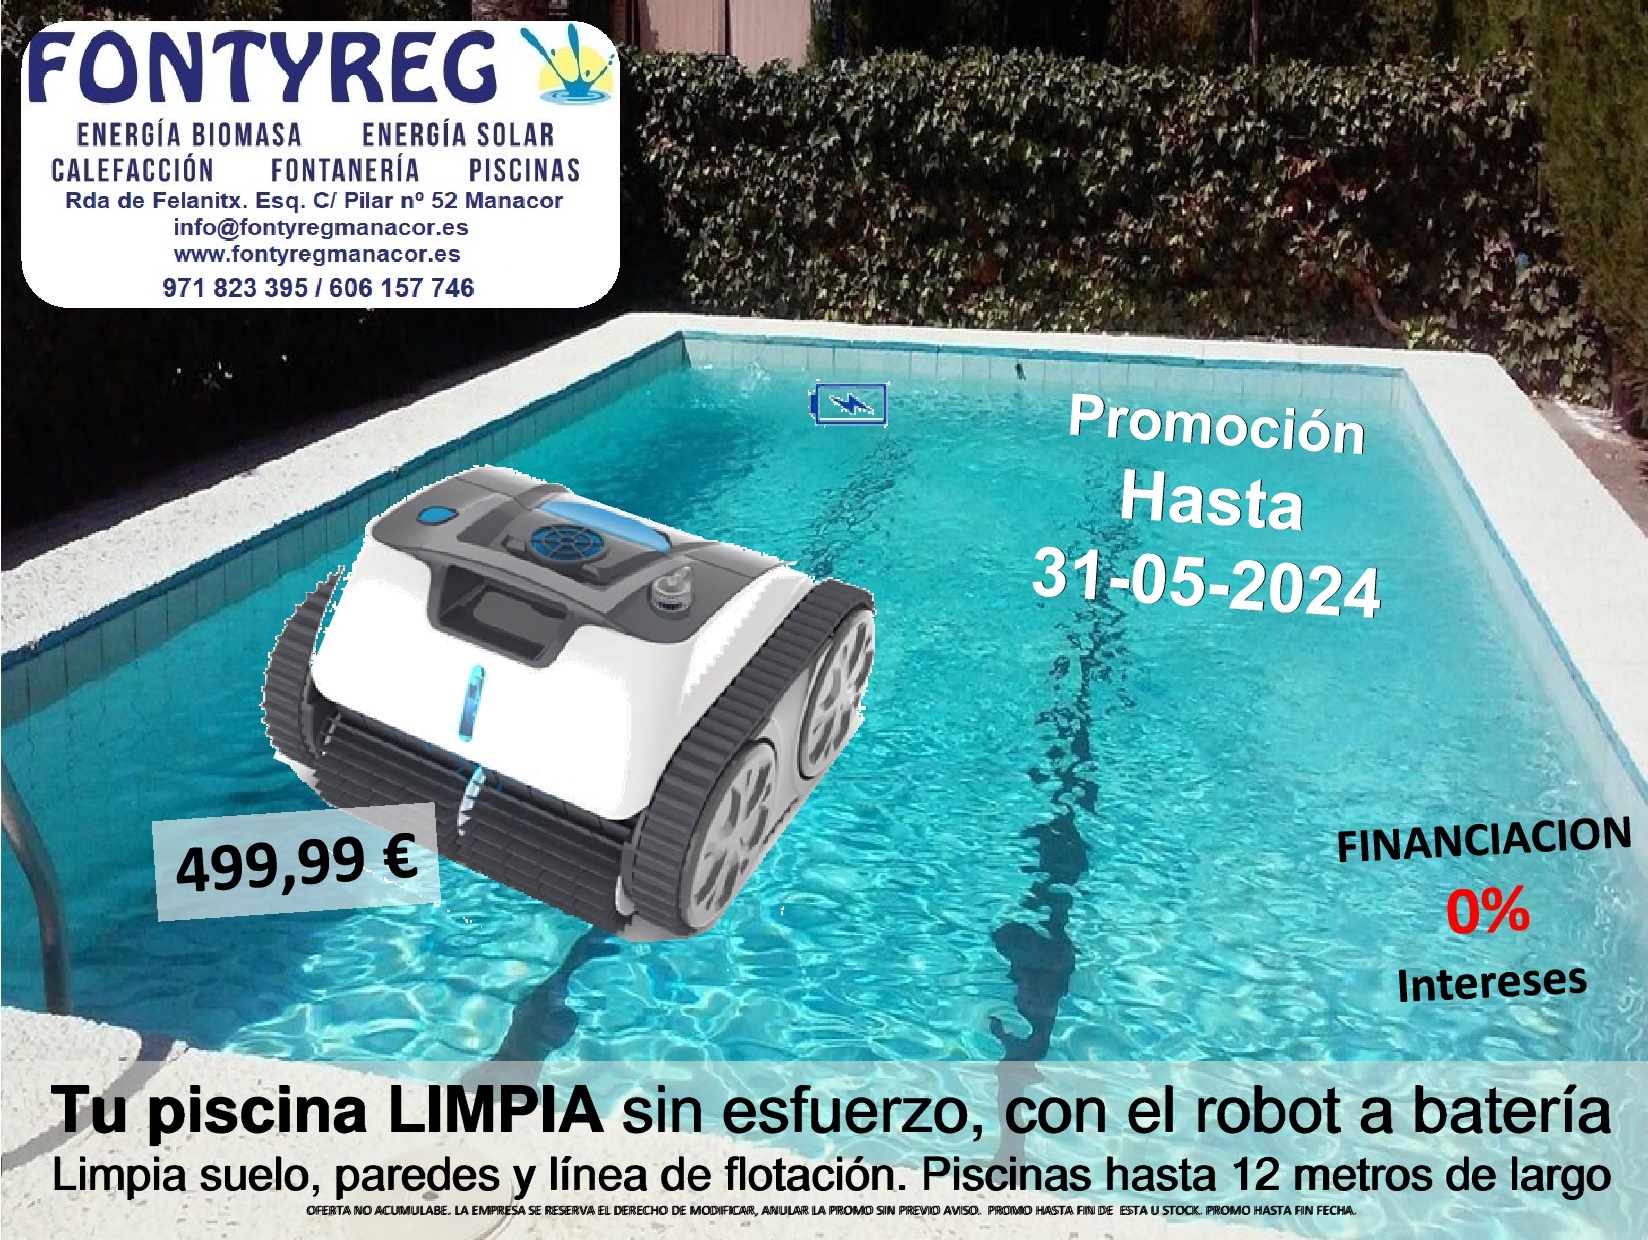 Robot limpiafondos piscina Manacor-Mallorca, limpiafondos piscina DOLPHIN maytronics Mallorca,